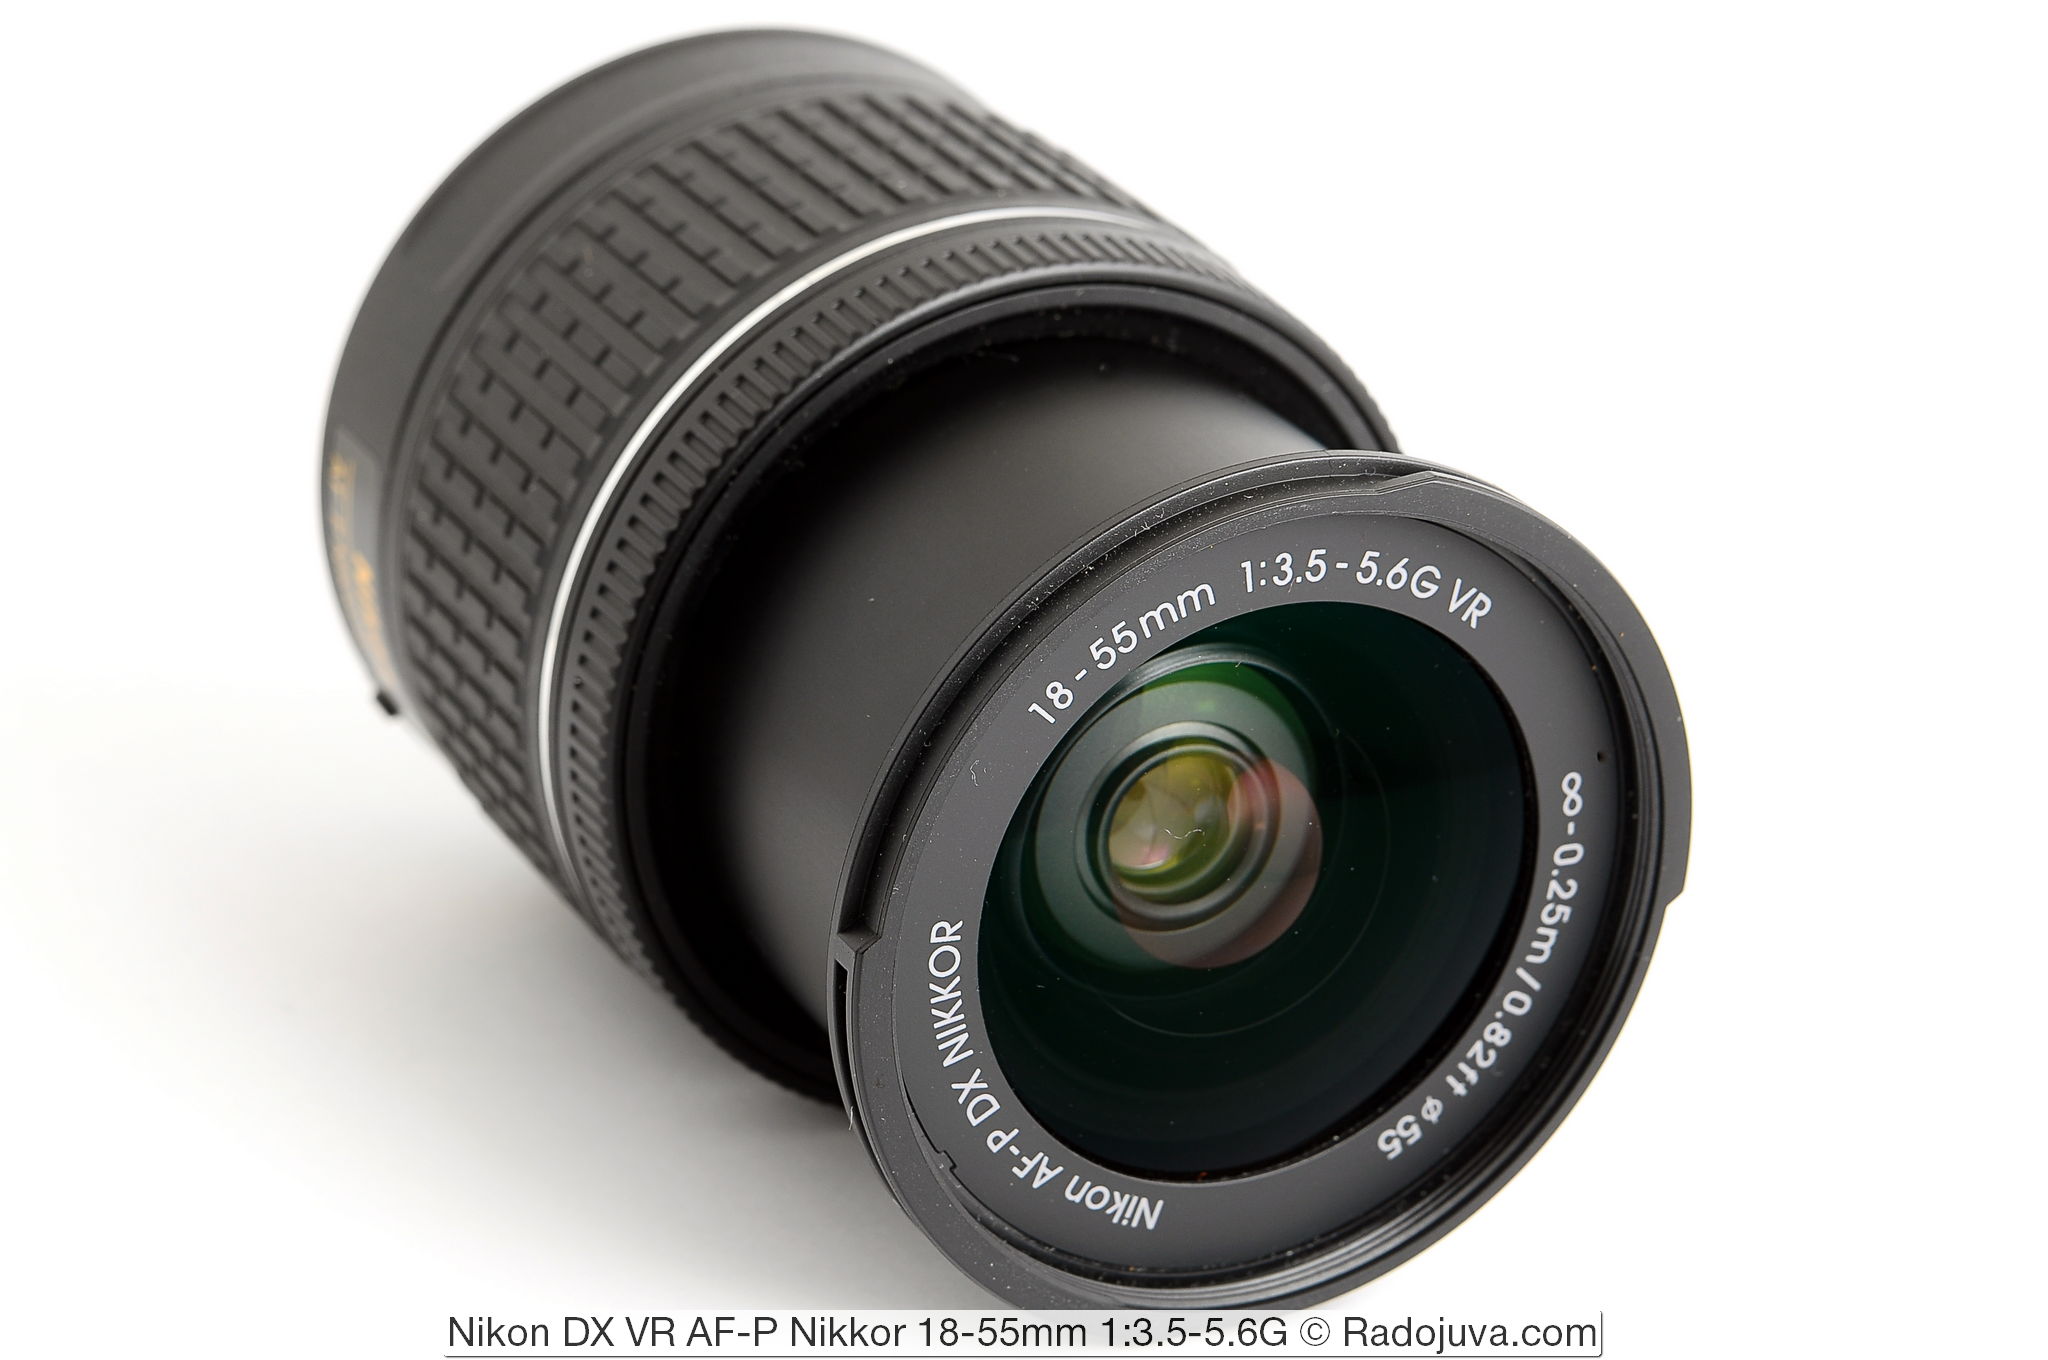 Nikon DX VR AF-P Nikkor 18-55 mm 1: 3.5-5.6G-lens